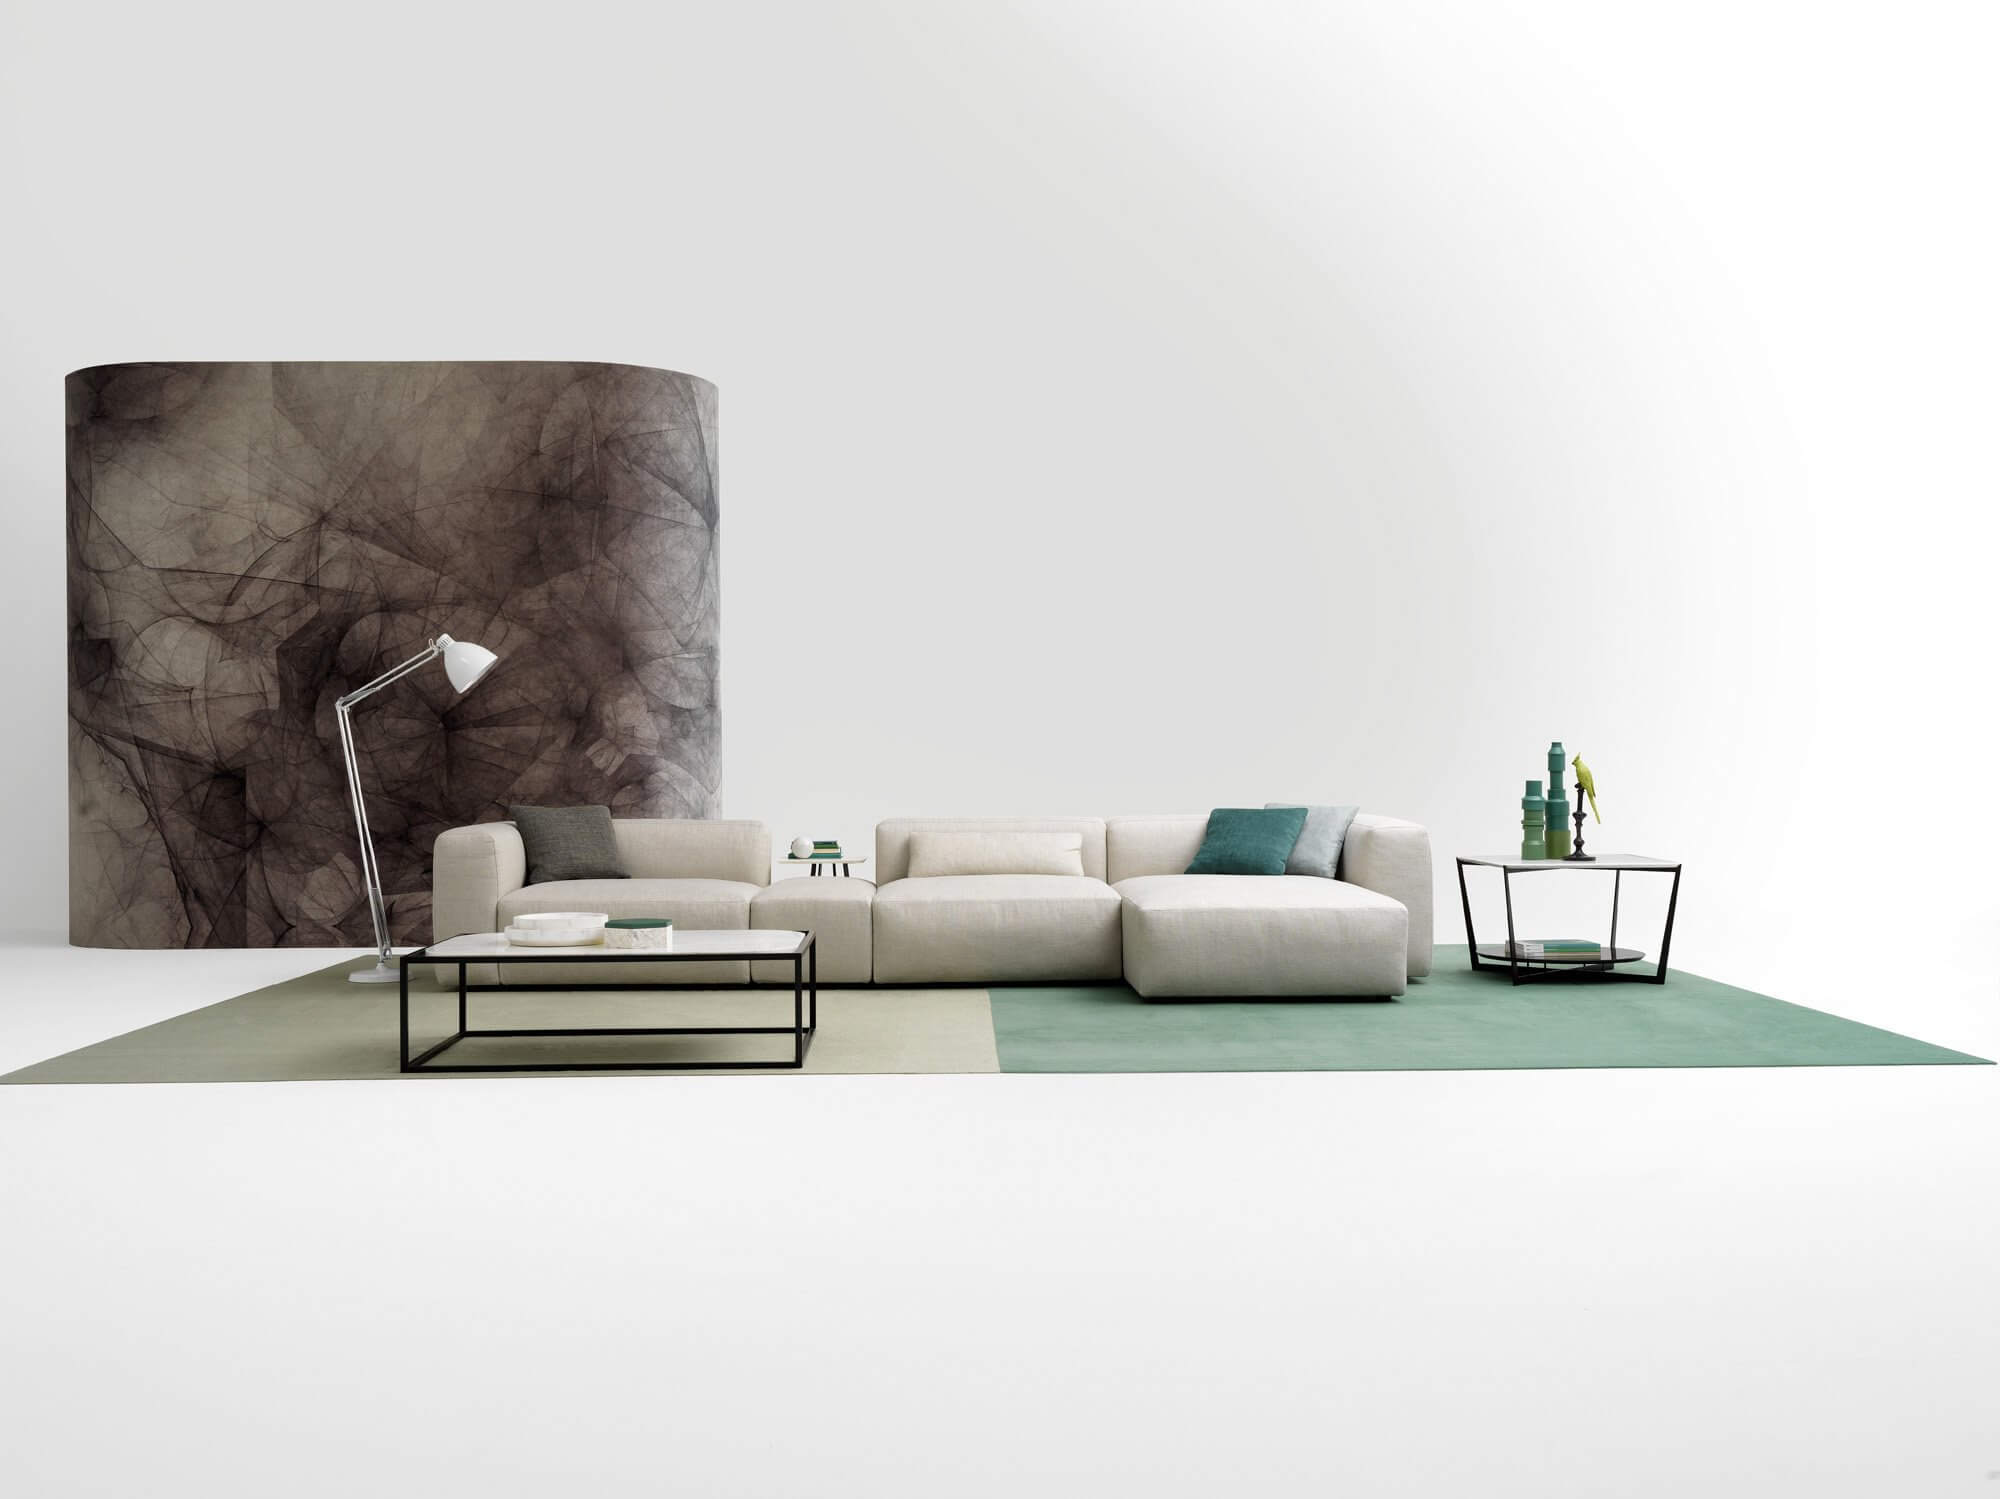 Az Alcazar design kanapé a moduláris kanapé távolról